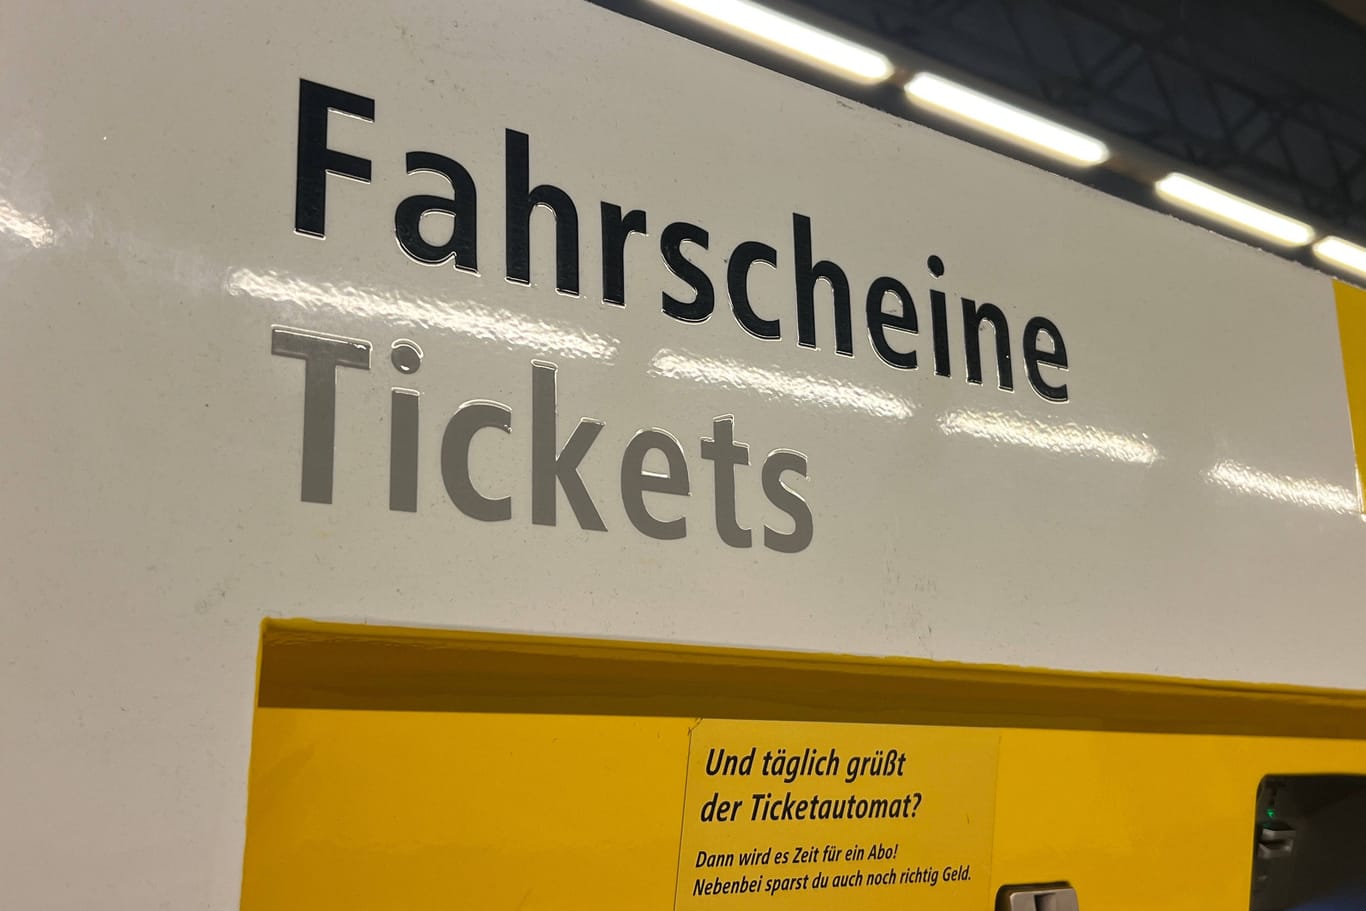 Fahrscheine Tickets Ticketautomat der BVG ***